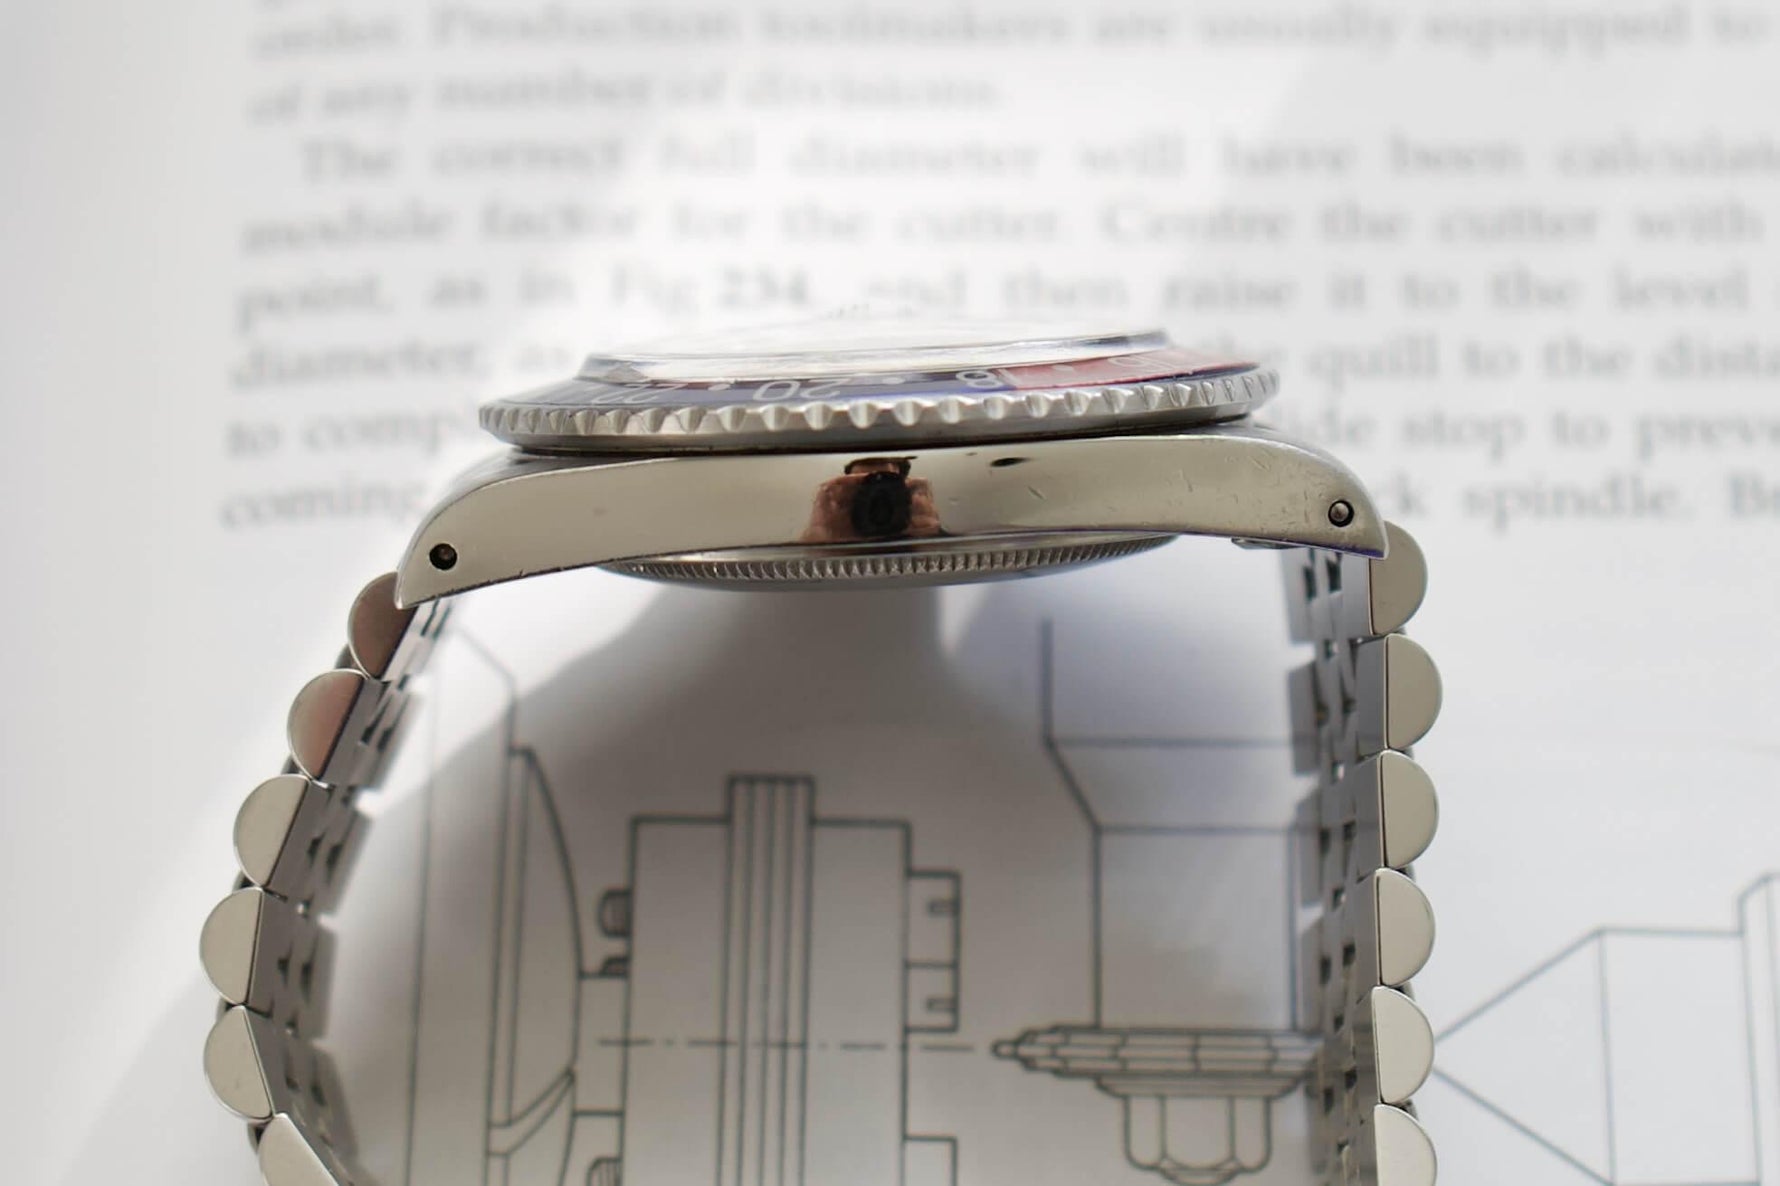 SOLDOUT: 1984 Rolex GMT Master ii Pepsi 16750 Jubilee Bracelet Ghost Bezel Vintage - WearingTime Luxury Watches